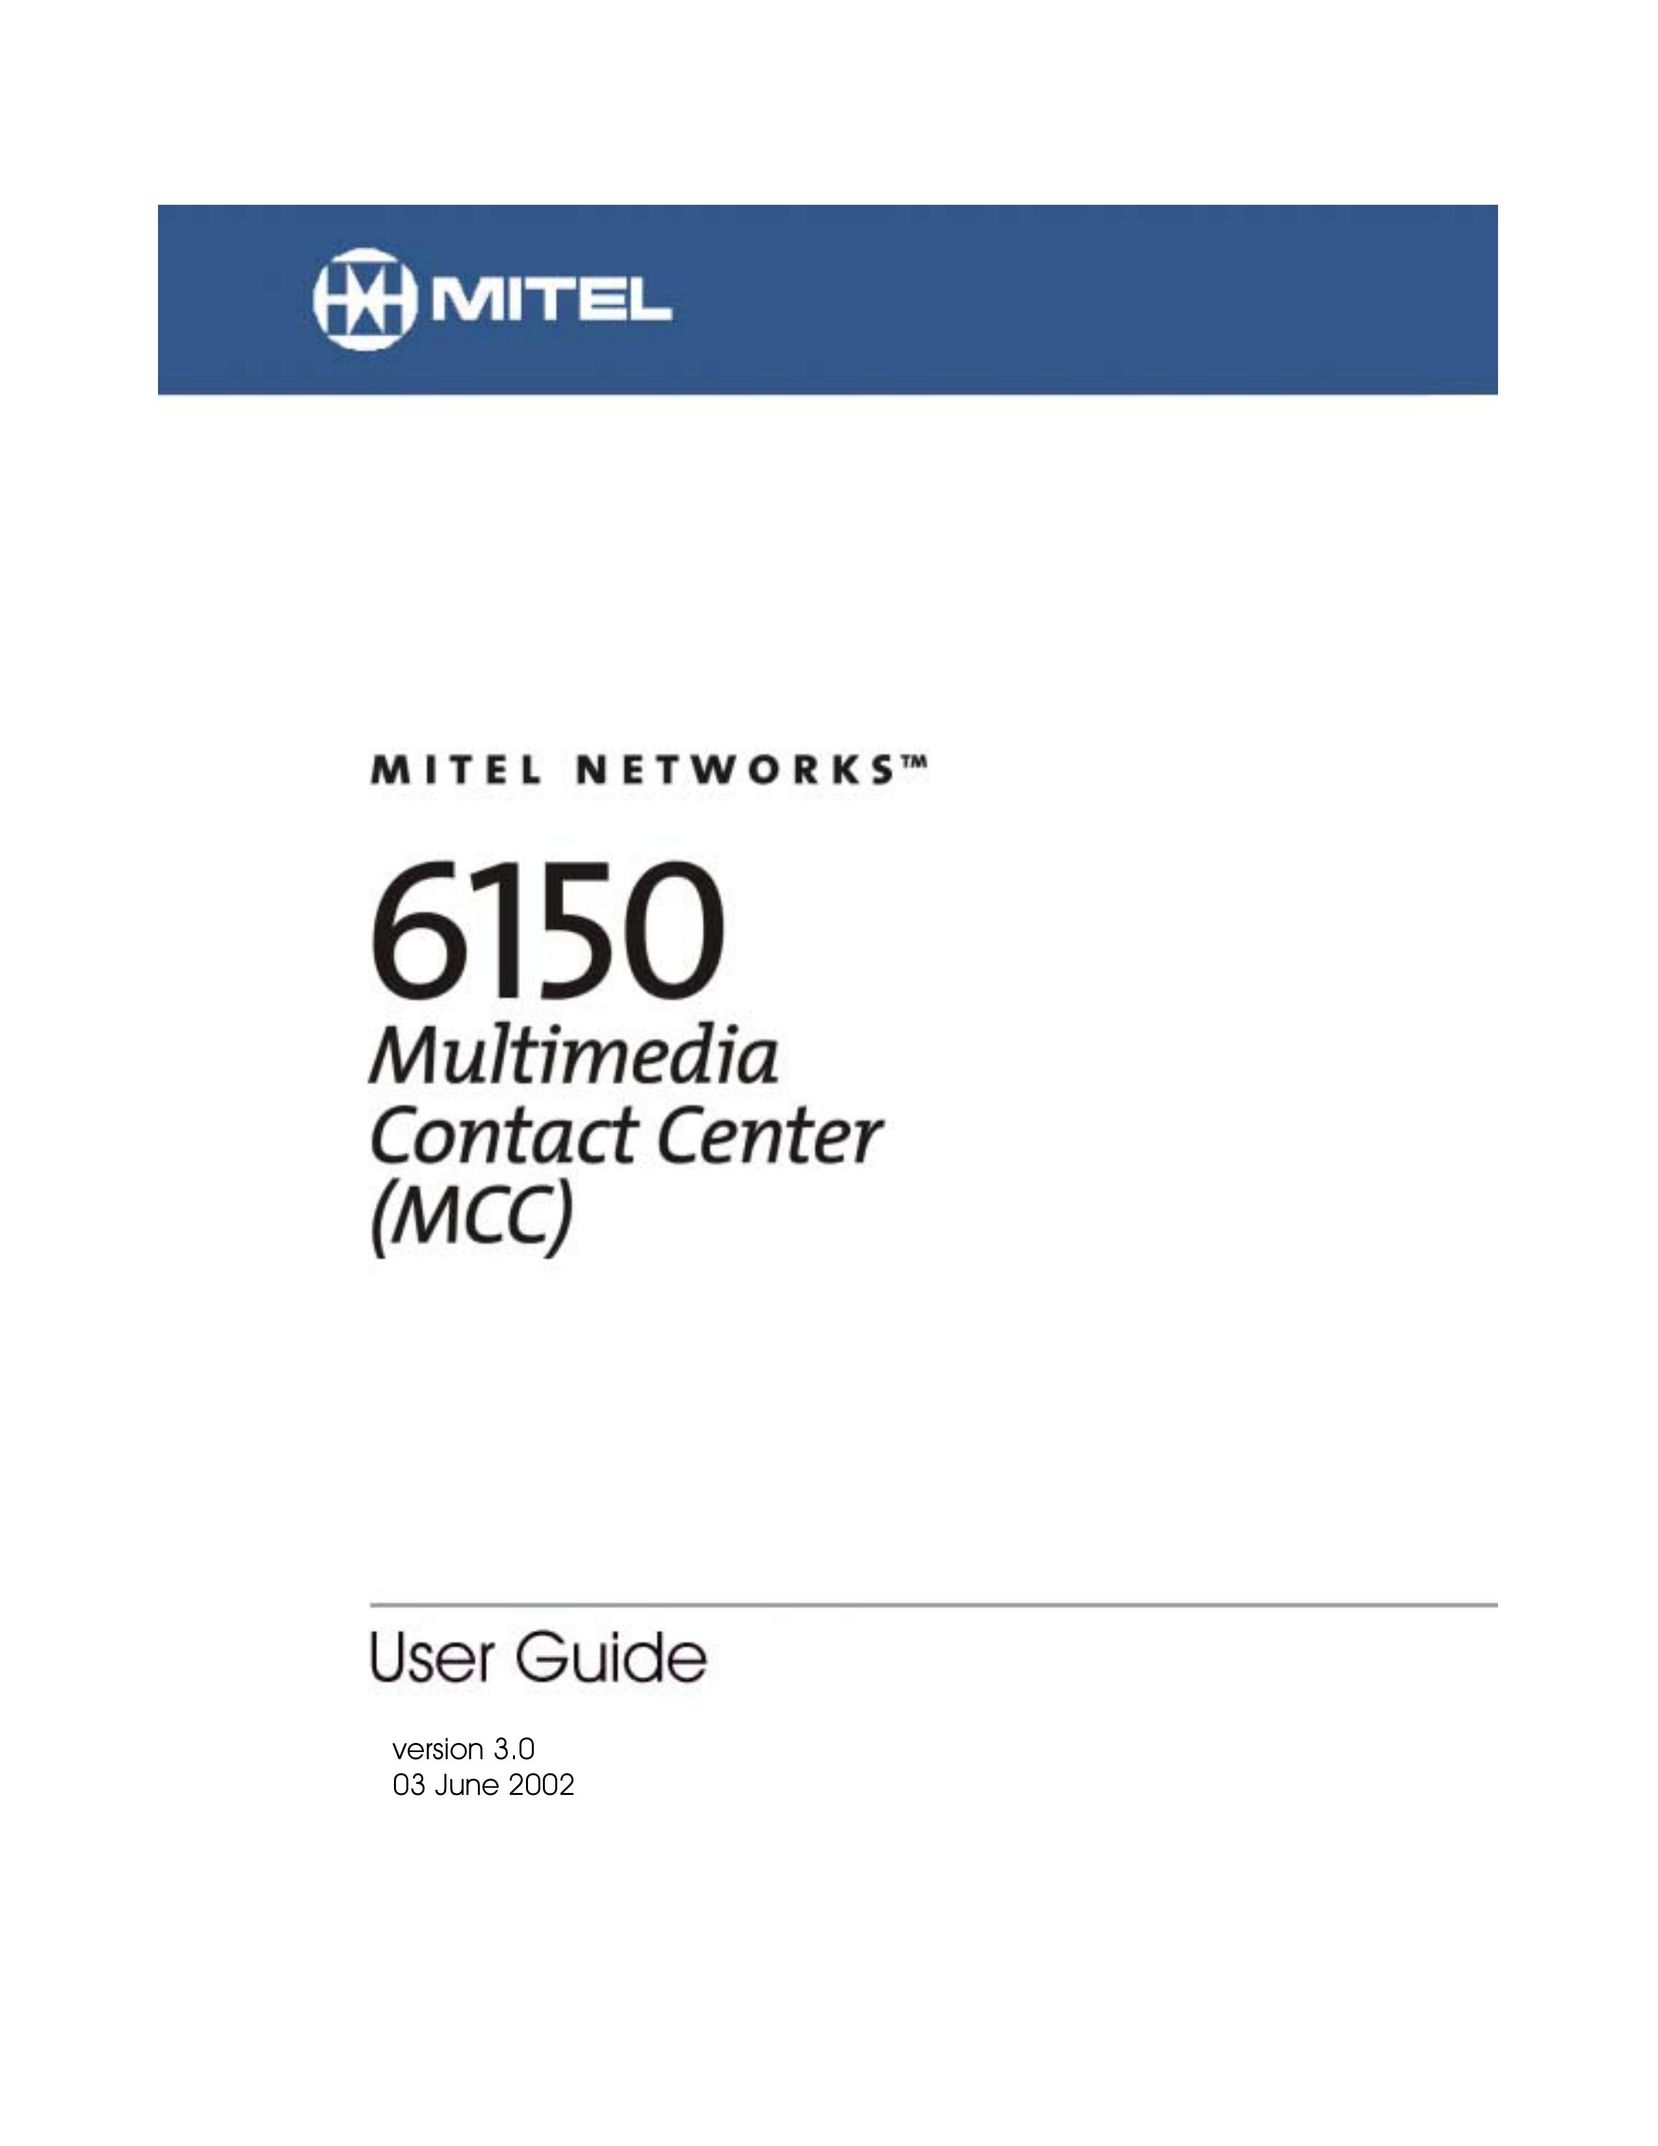 Mitel 6150 MCC Kitchen Grill User Manual